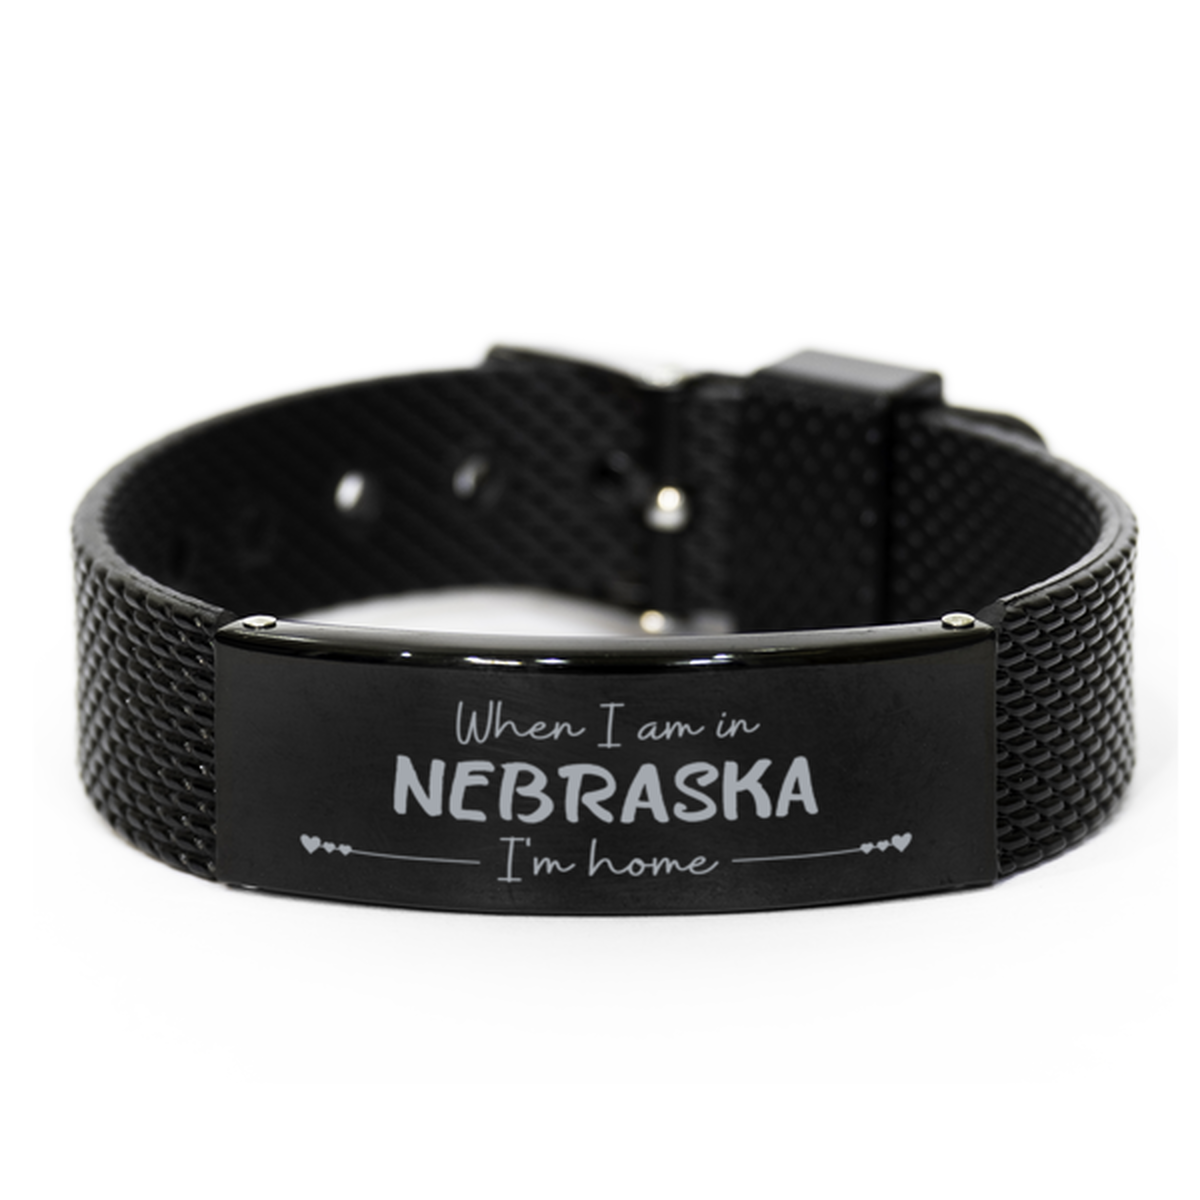 When I am in Nebraska I'm home Black Shark Mesh Bracelet, Cheap Gifts For Nebraska, State Nebraska Birthday Gifts for Friends Coworker